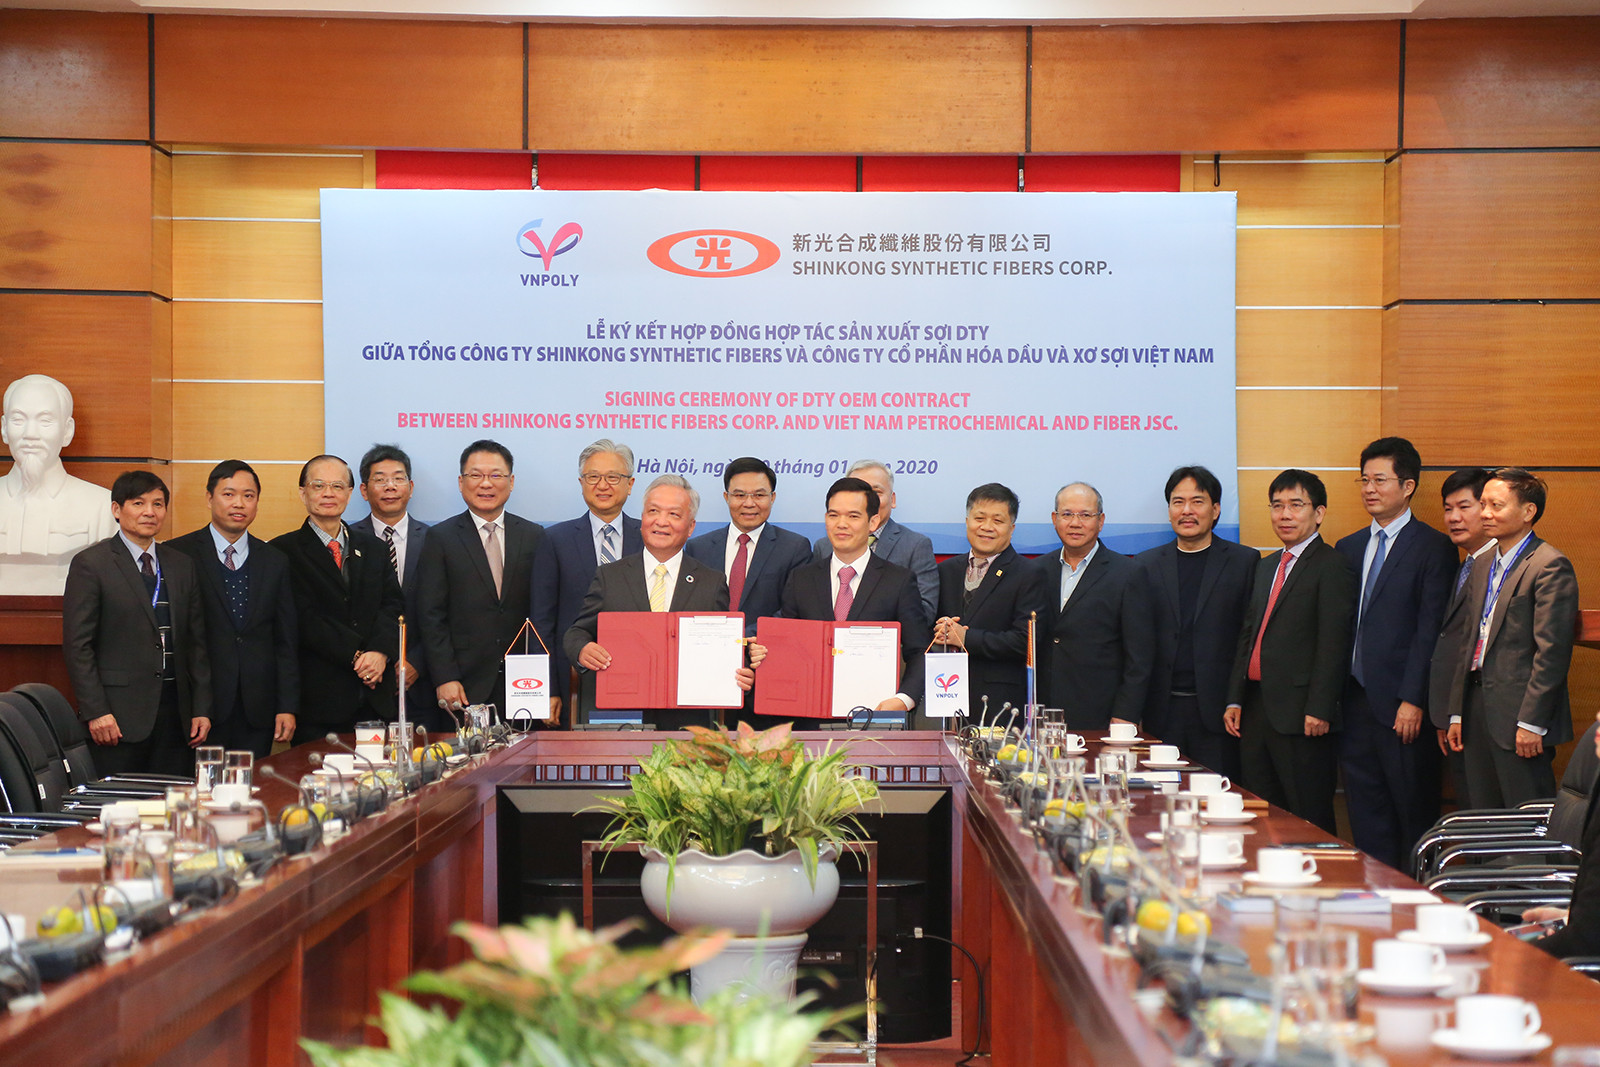 Lễ ký hợp đồng hợp tác sản xuất sợi giữa VNPOLY VÀ SSFC (Đài Loan)